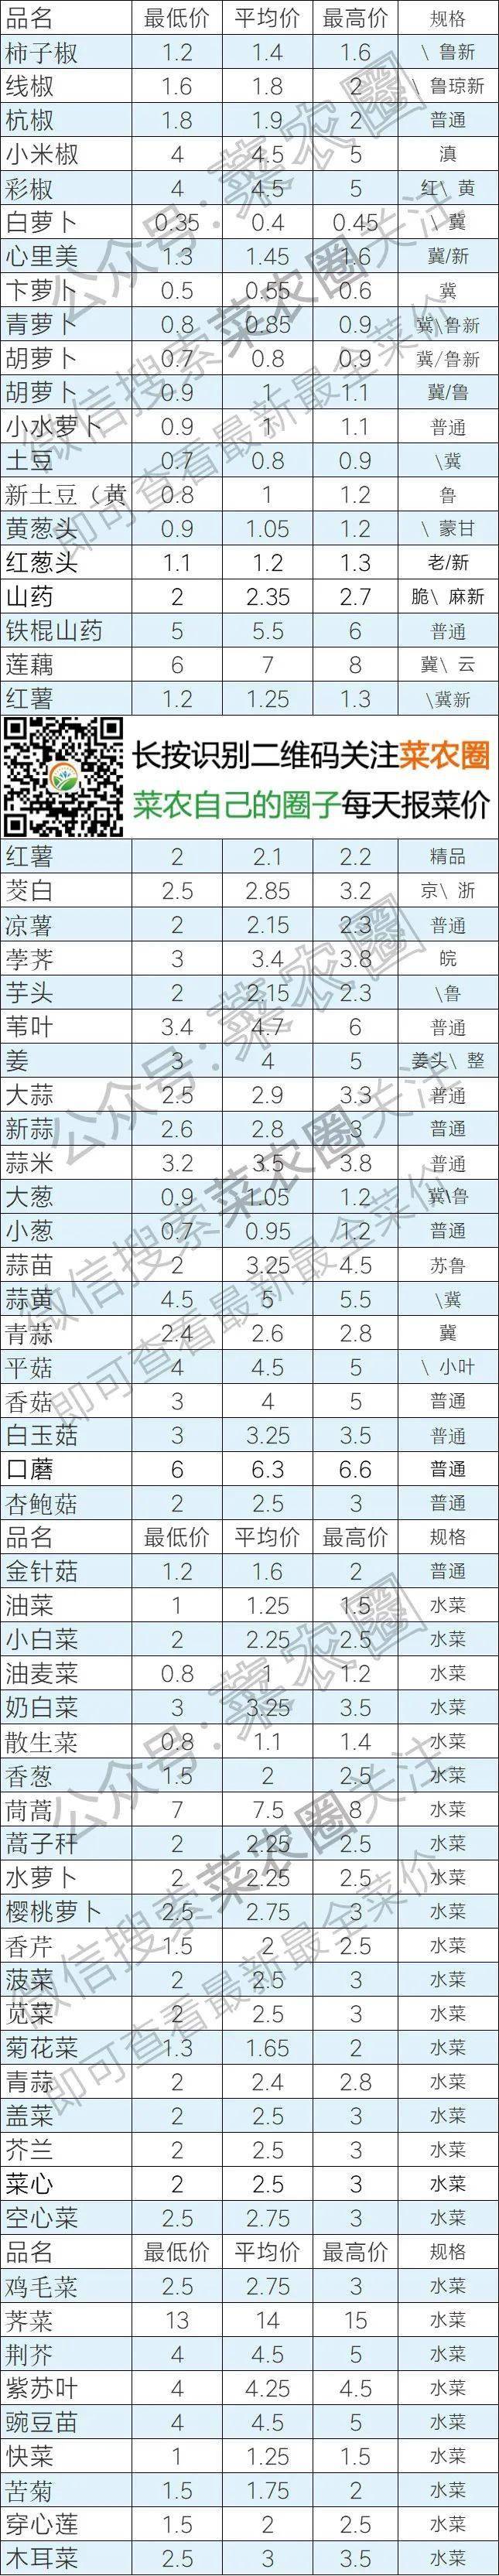 2021年6月8日北京新发地,山东寿光,云南,河北石家庄今日蔬菜价格行情一览表